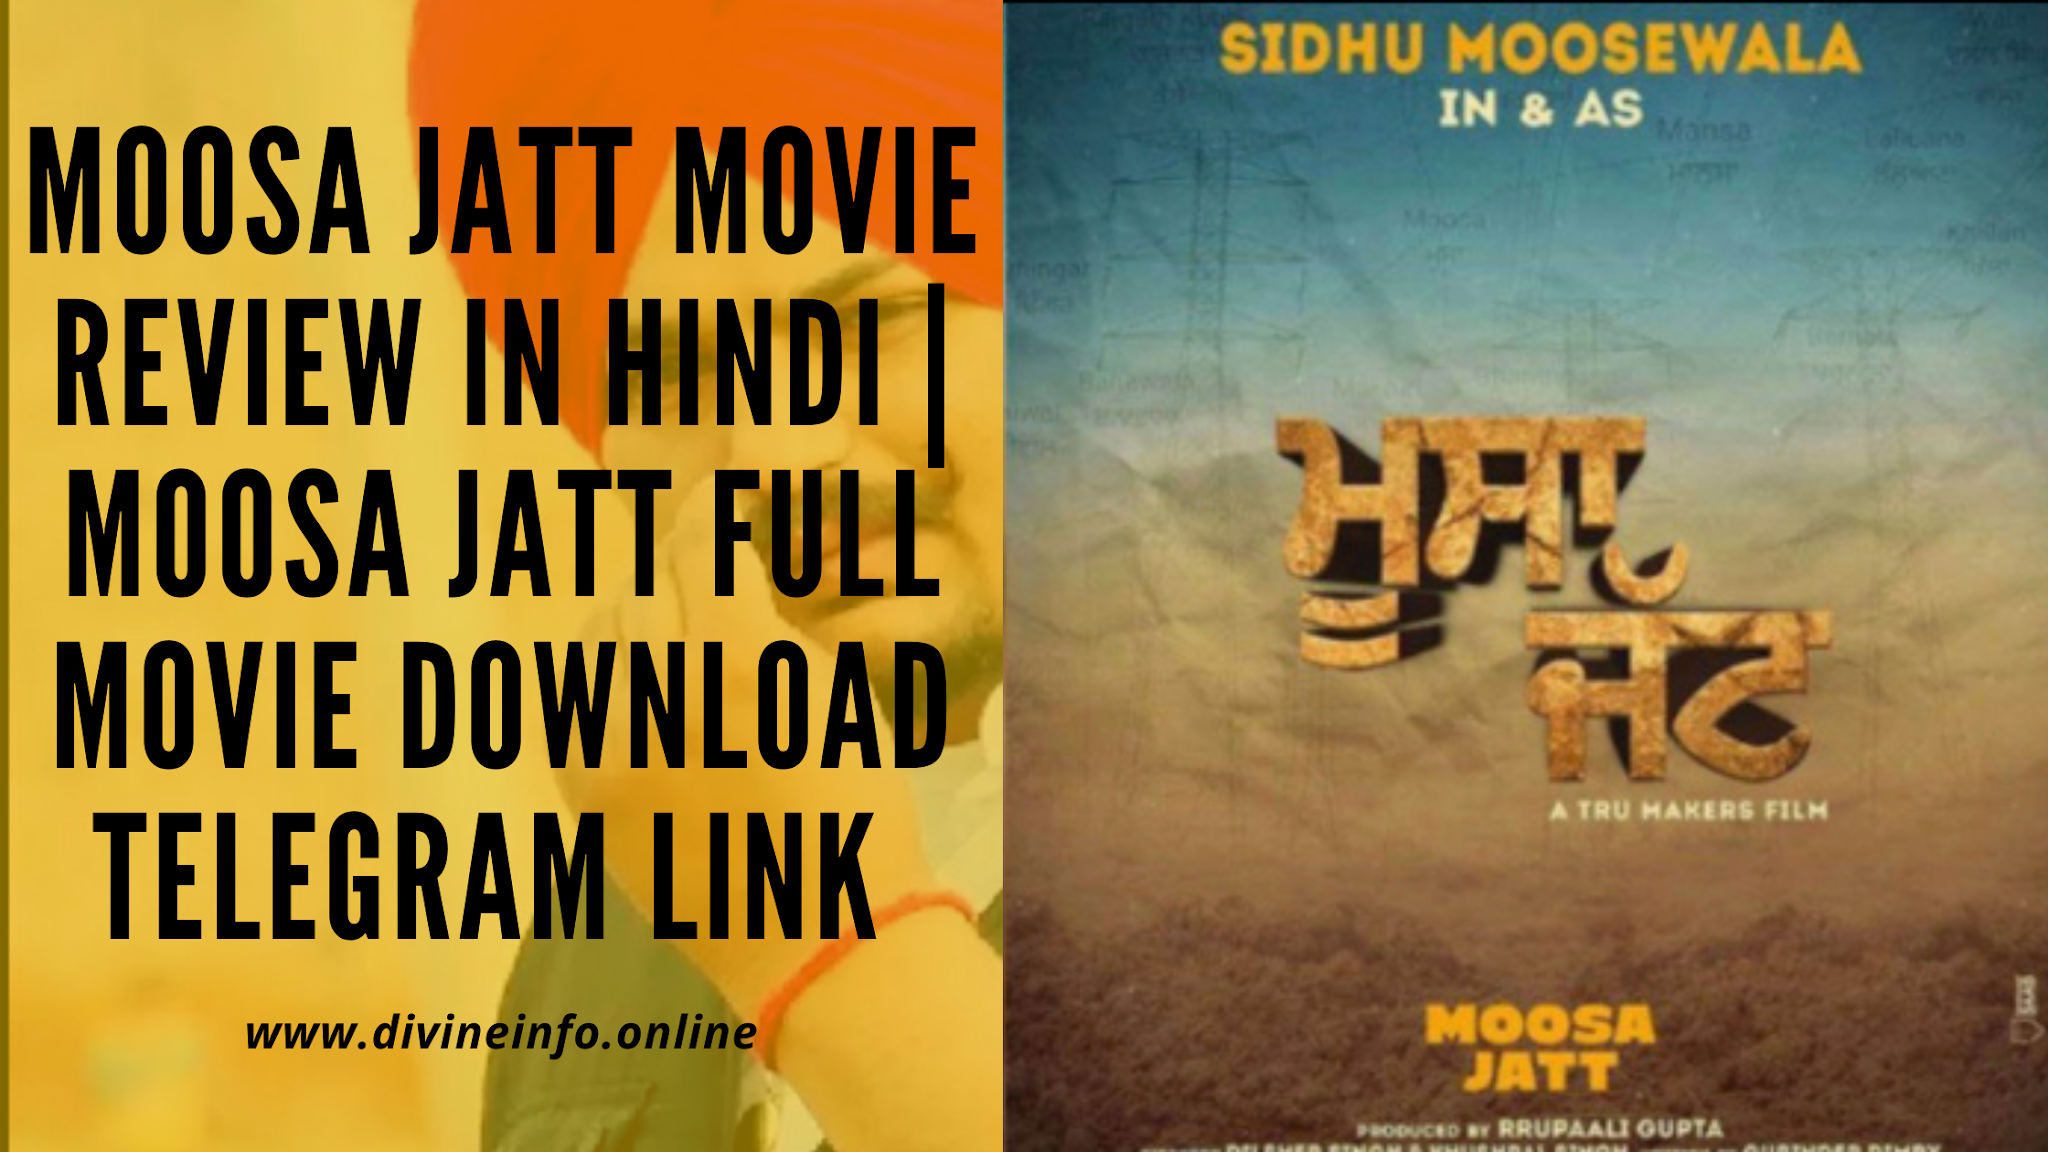 Moosa Jatt Movie Review In Hindi | Moosa Jatt full movie download Telegram link